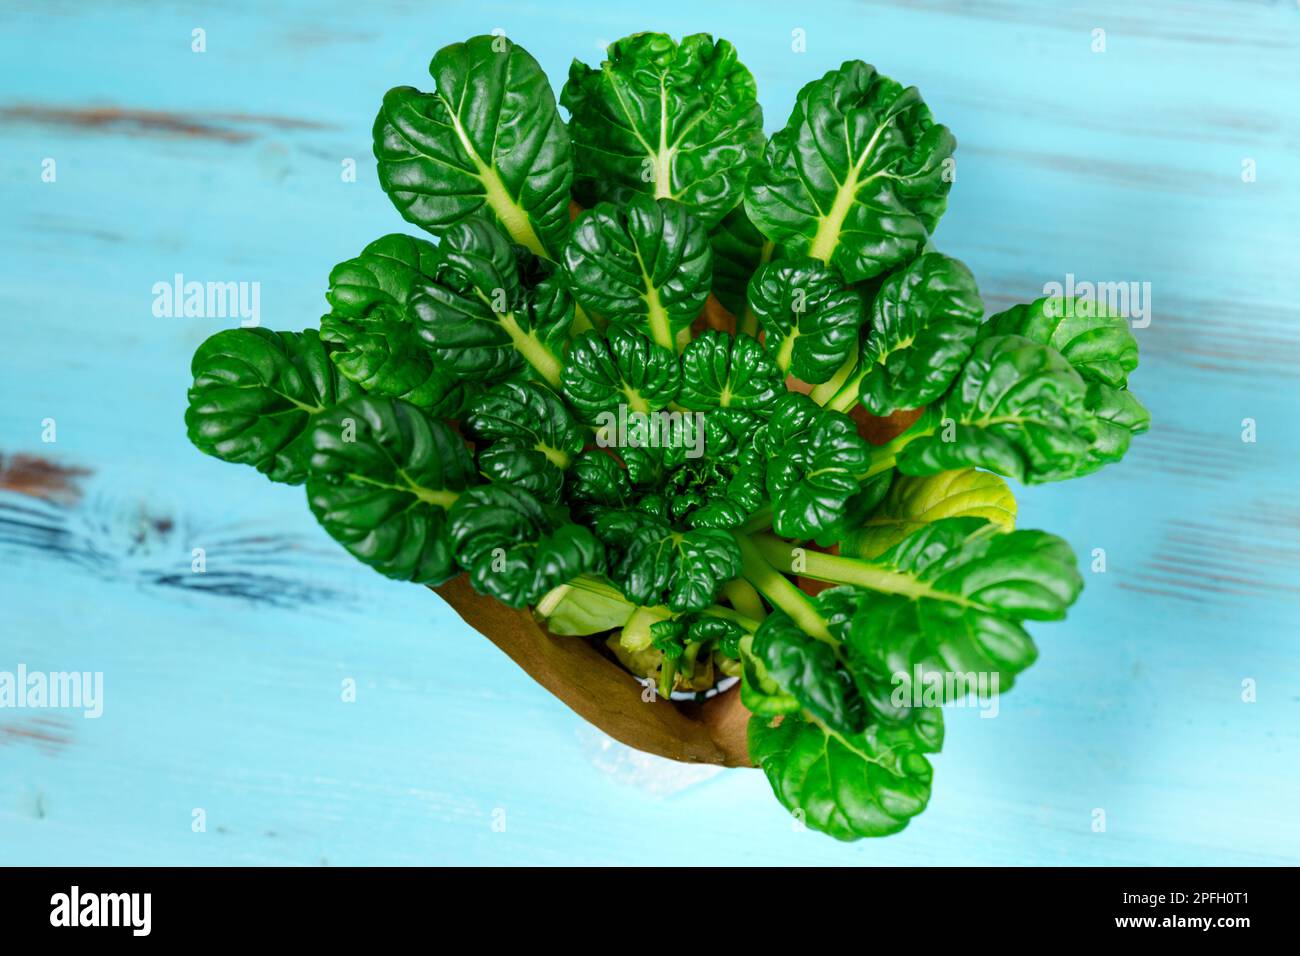 TAT soi appartiene alla specie Turnip del genere Cabbage ed è un parente stretto del cavolo di Pechino Foto Stock